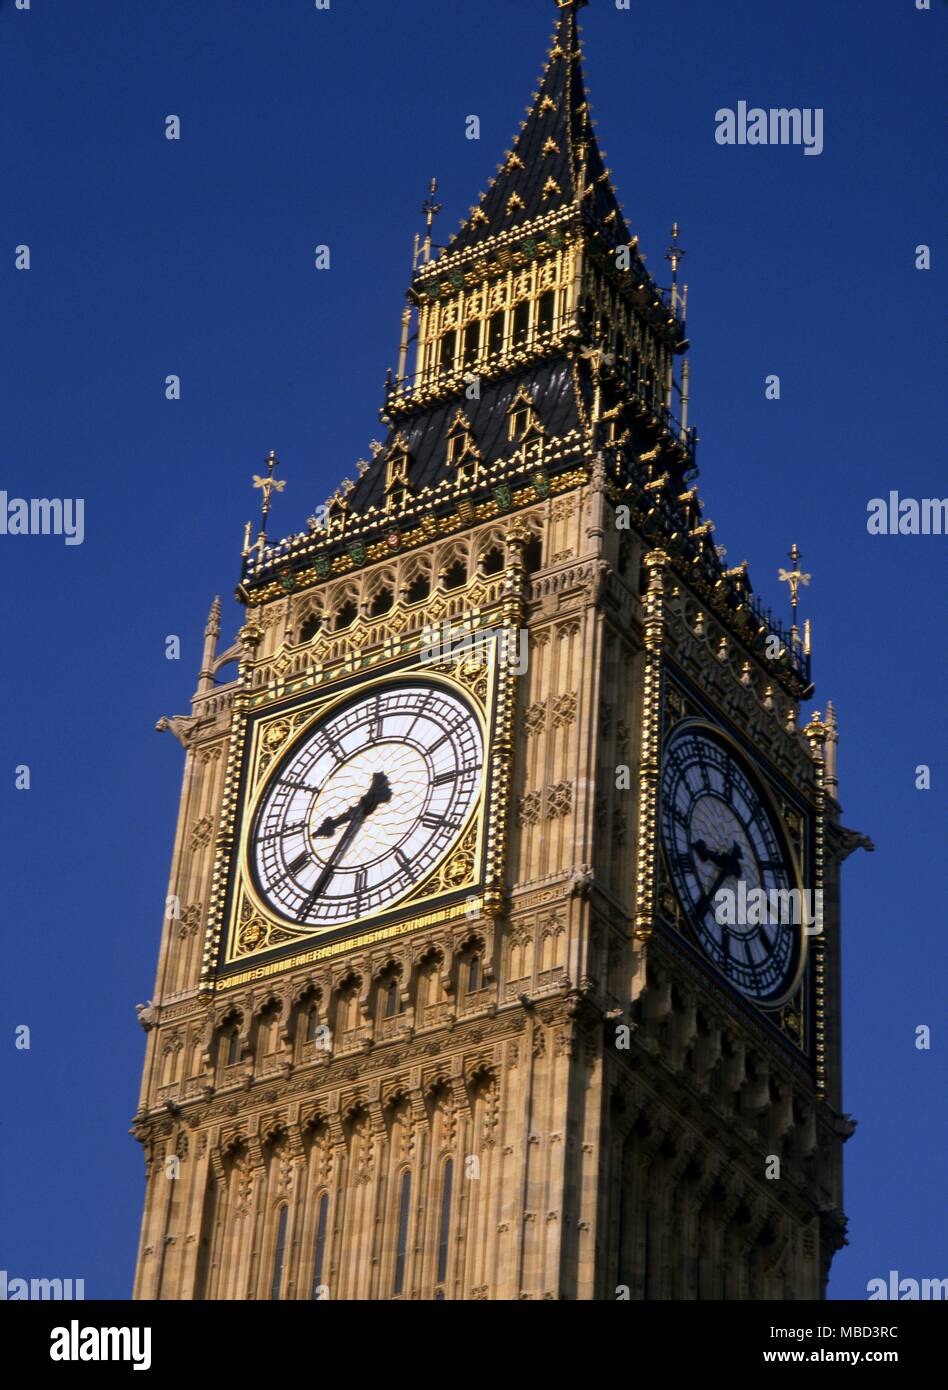 London - Westminster das Ziffernblatt der Uhr von Big Ben im Turm an der Westminster © 2006 Charles Walker/ Stockfoto